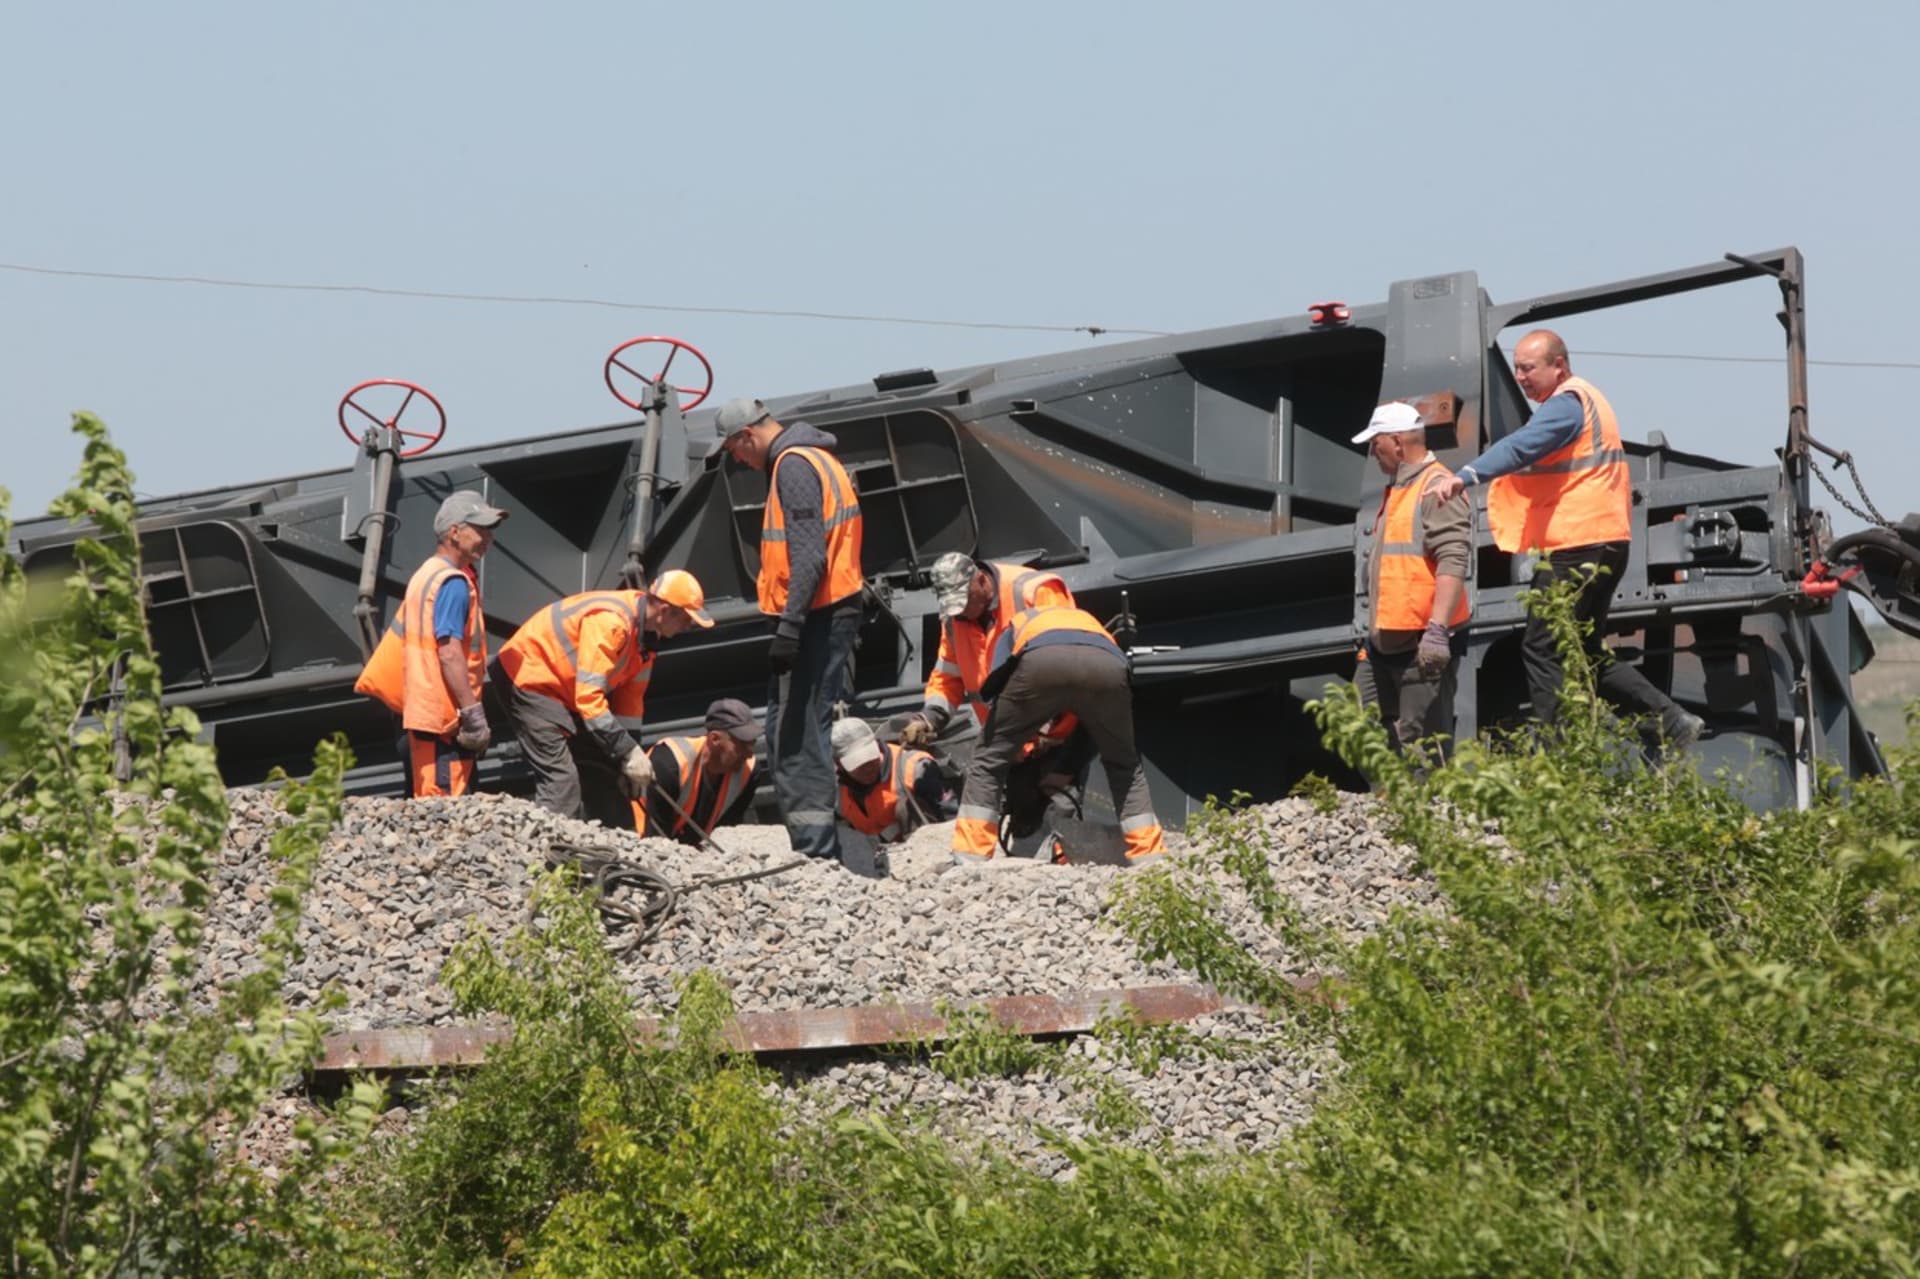 Na poloostrově Krym došlo k vykolejení vlaku s obilím. Převoz zásob v oblasti je pro Rusy narušen.